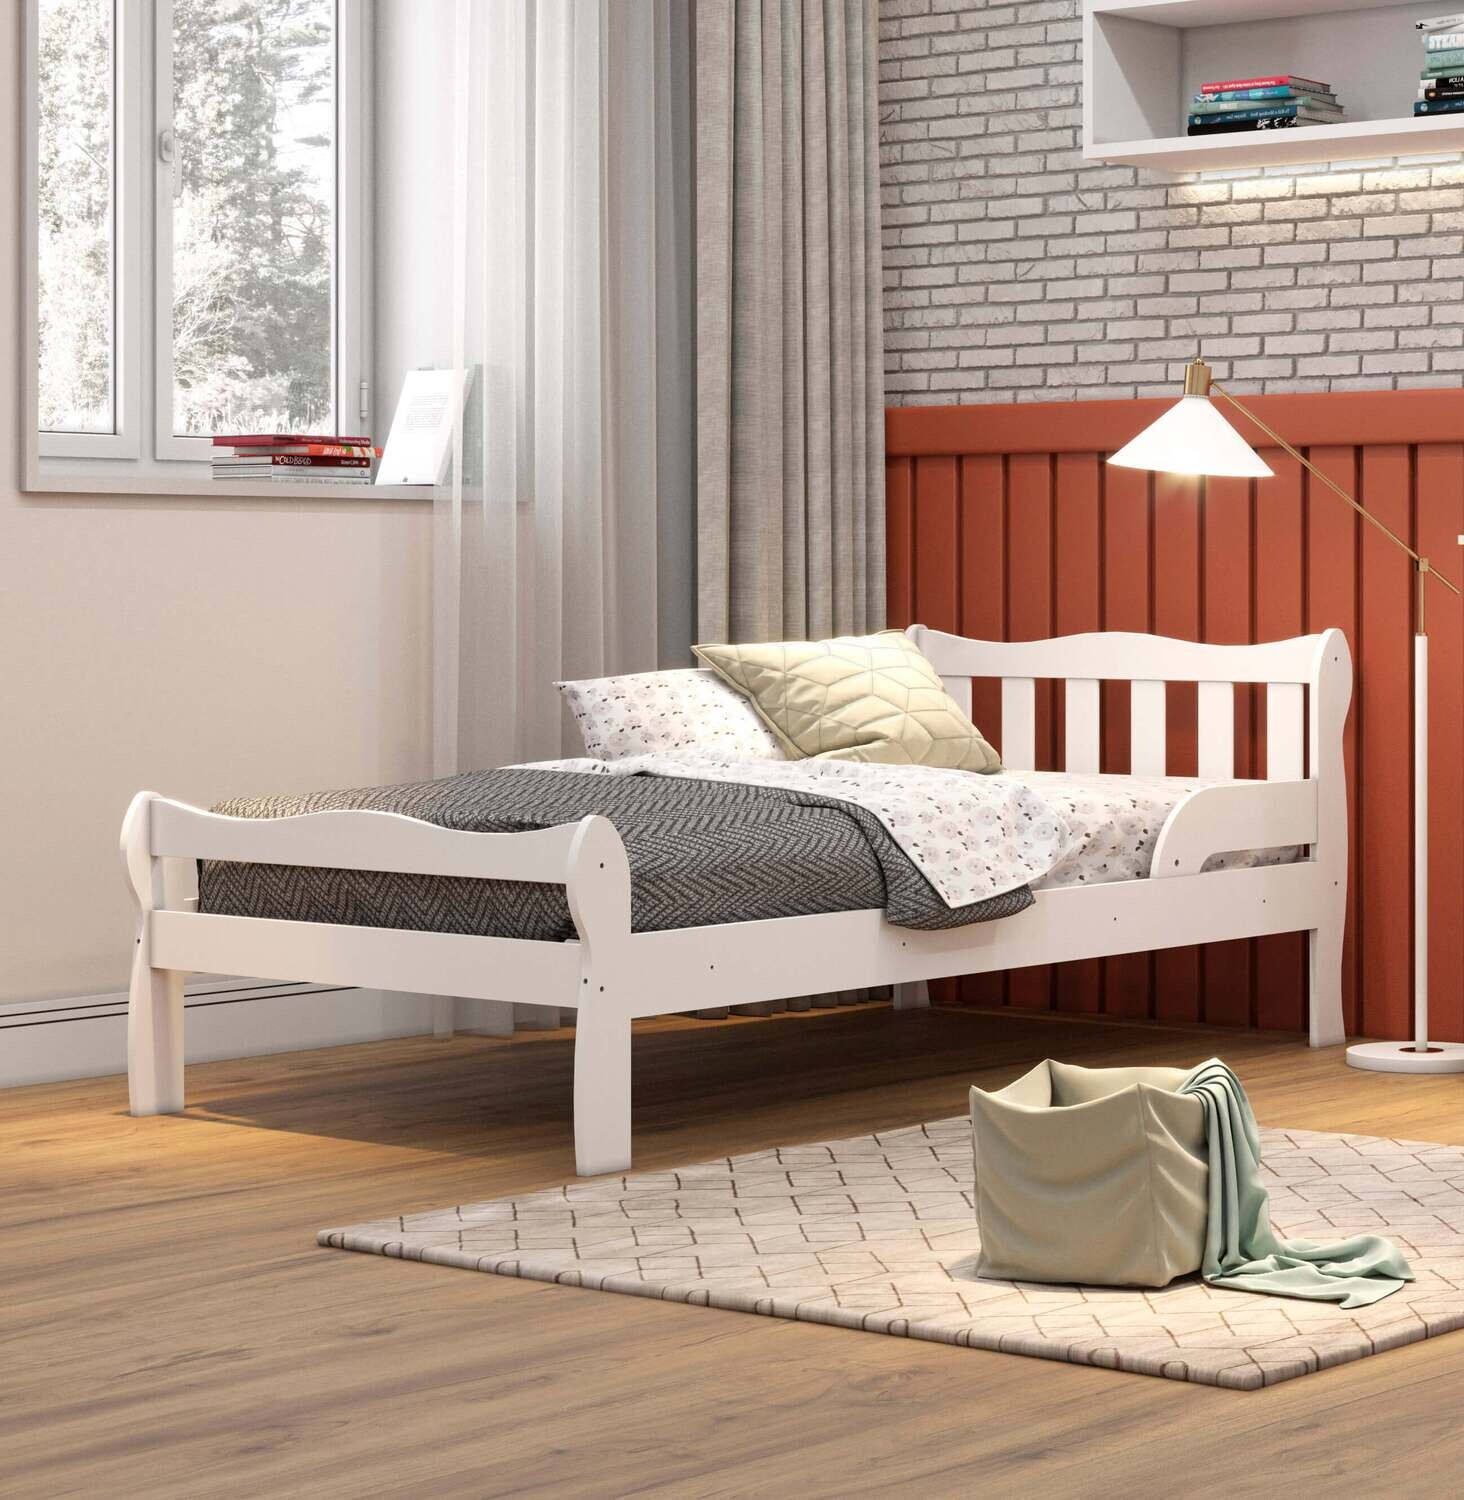 El juego de dormitorio - Studio Furniture Factory Store